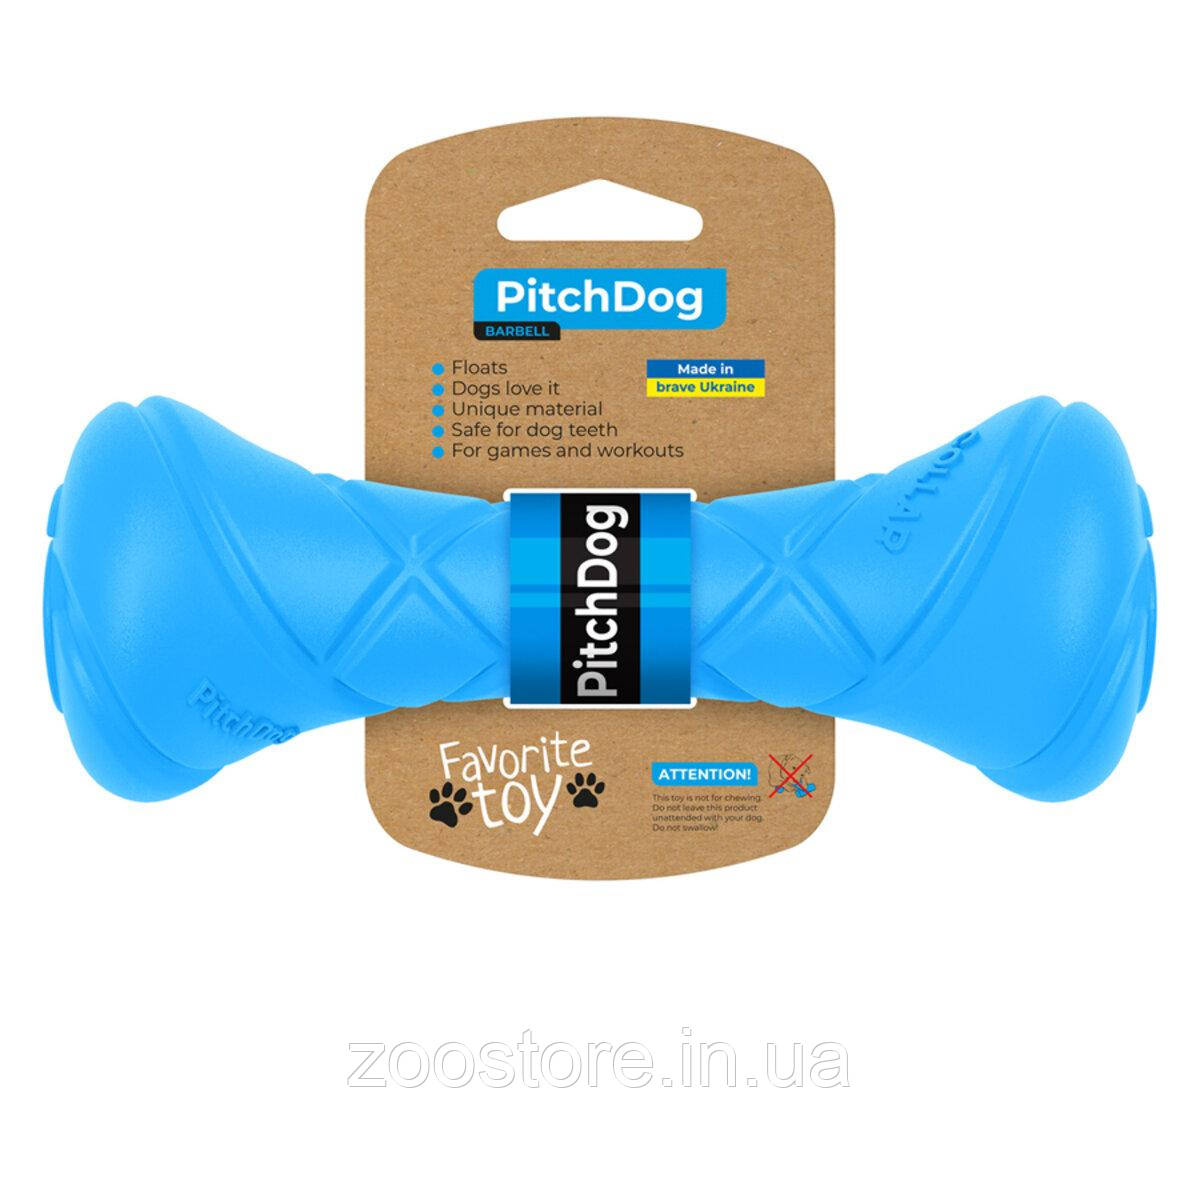 Іграшка для собак PitchDog - гантель для апортировки, довжина 19 см, діаметр 7 см БЛАКИТНА Collar